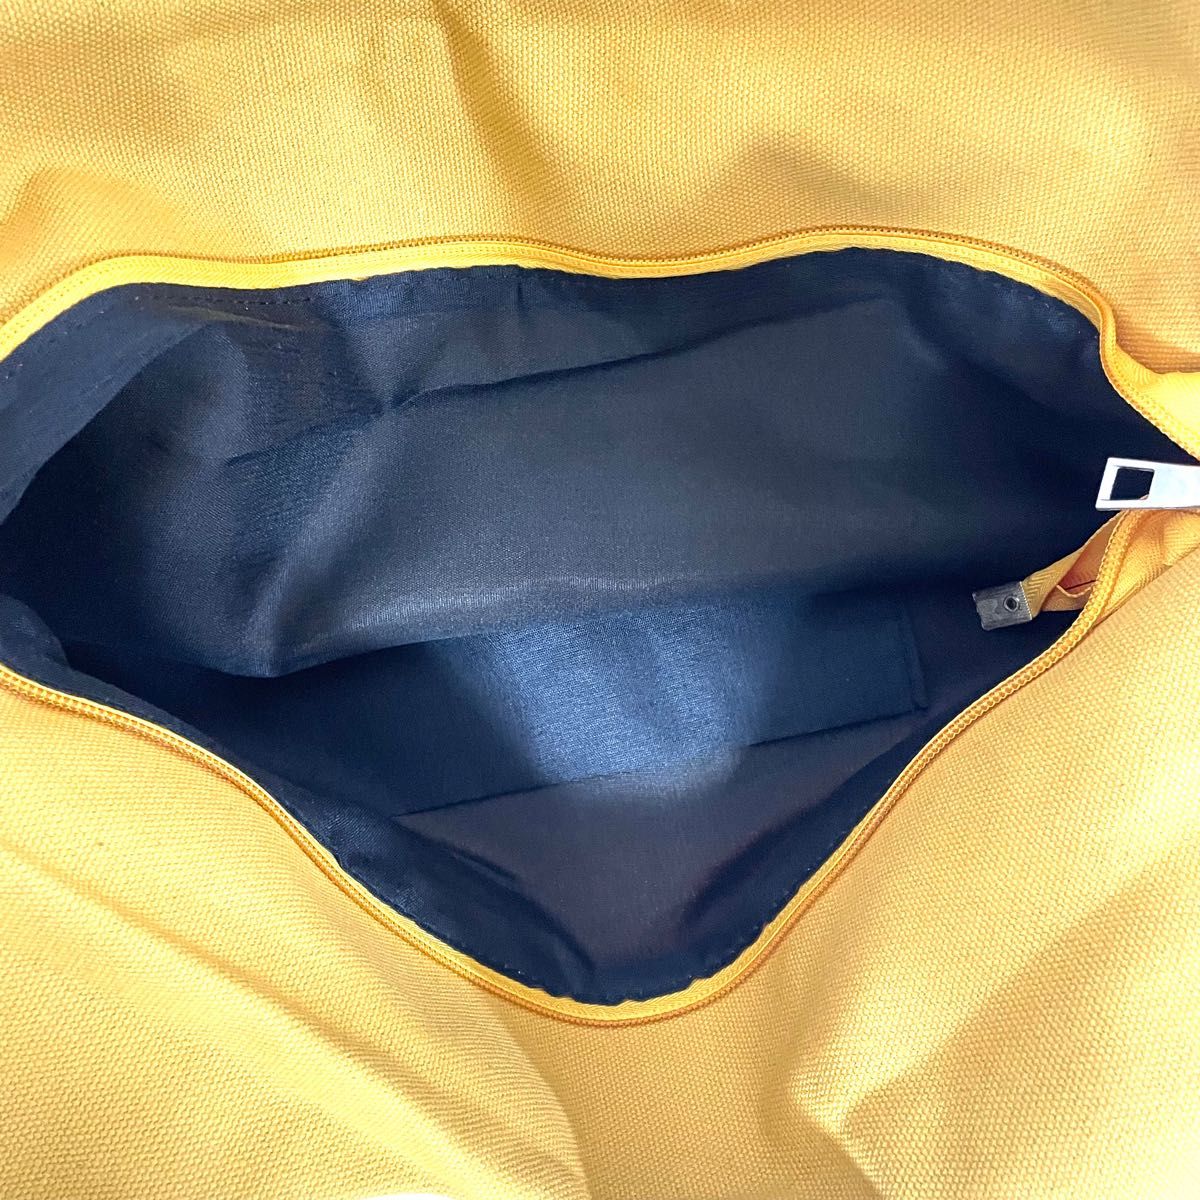 【未使用】トートバッグ キャンパスカバン マザーズバッグ スポーツバッグ(黄色) エコバッグ マイバッグ